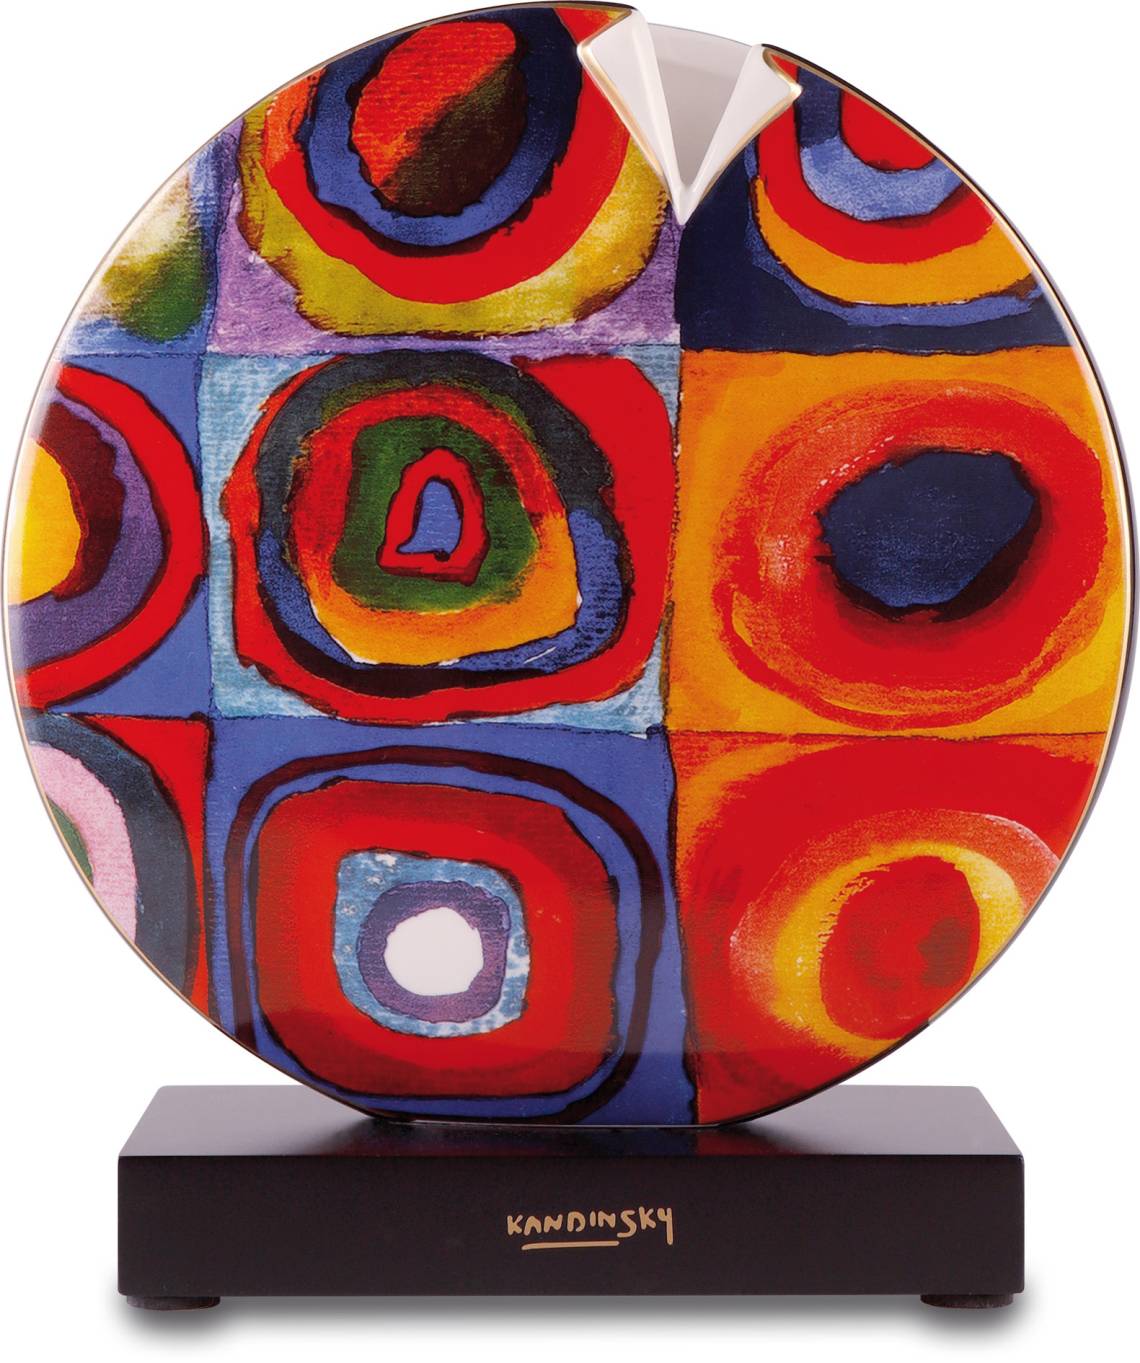 Vase mit Kandinskys Quadrate von Artis Orbis